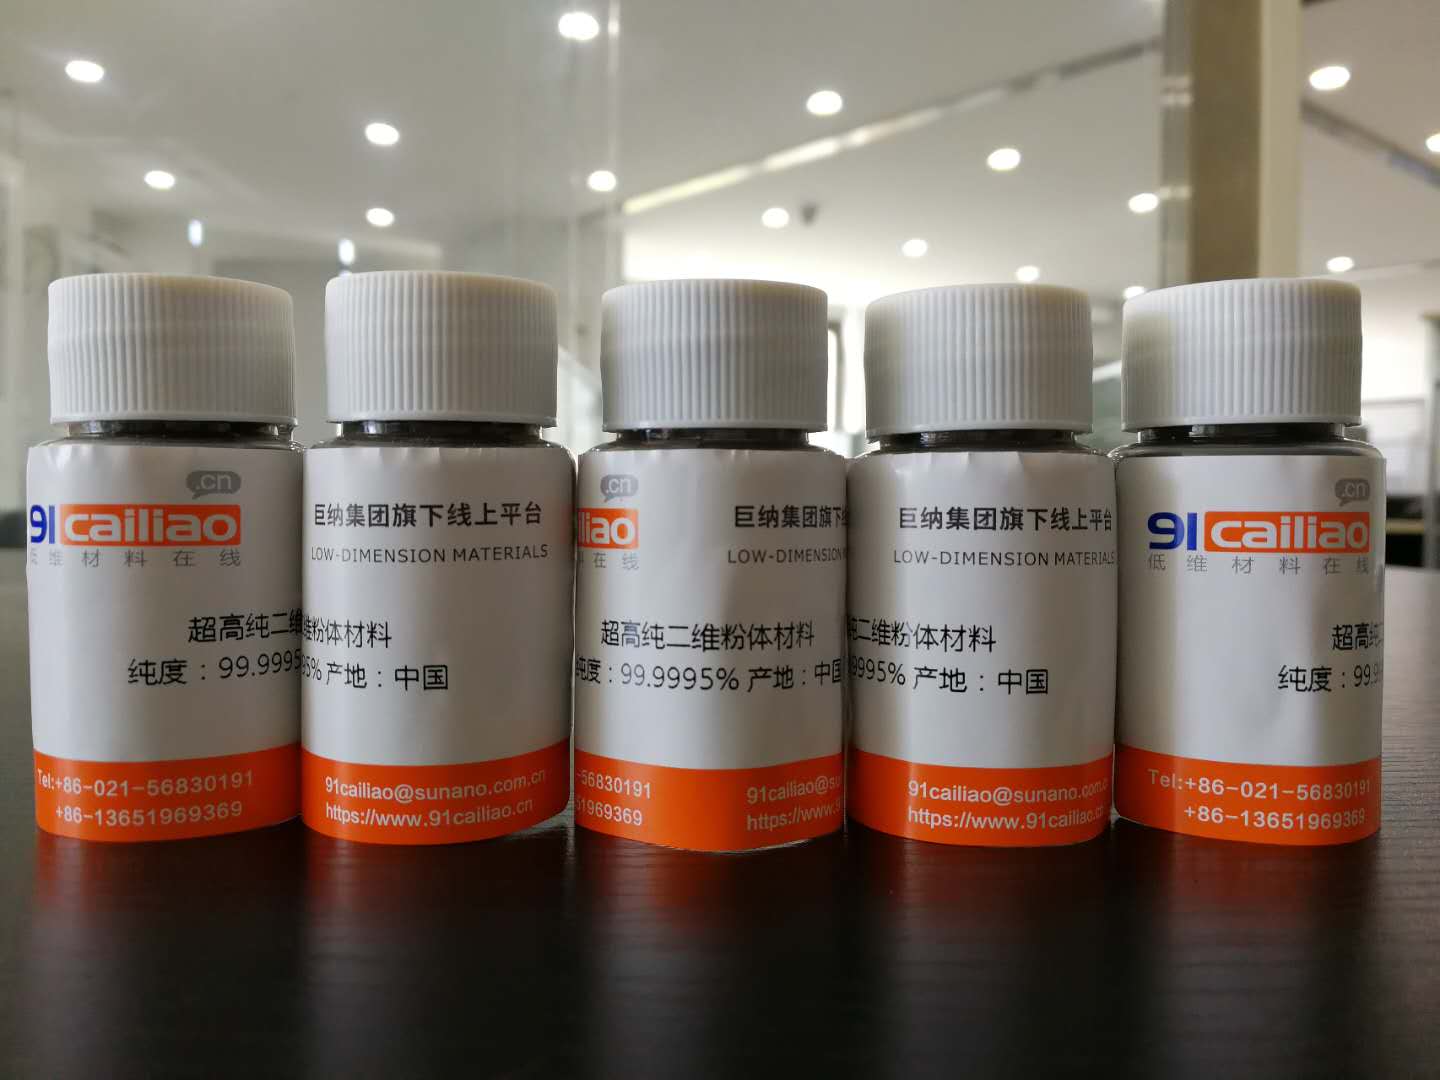 超高纯GeS粉末 超高纯硫化锗粉末(1g)